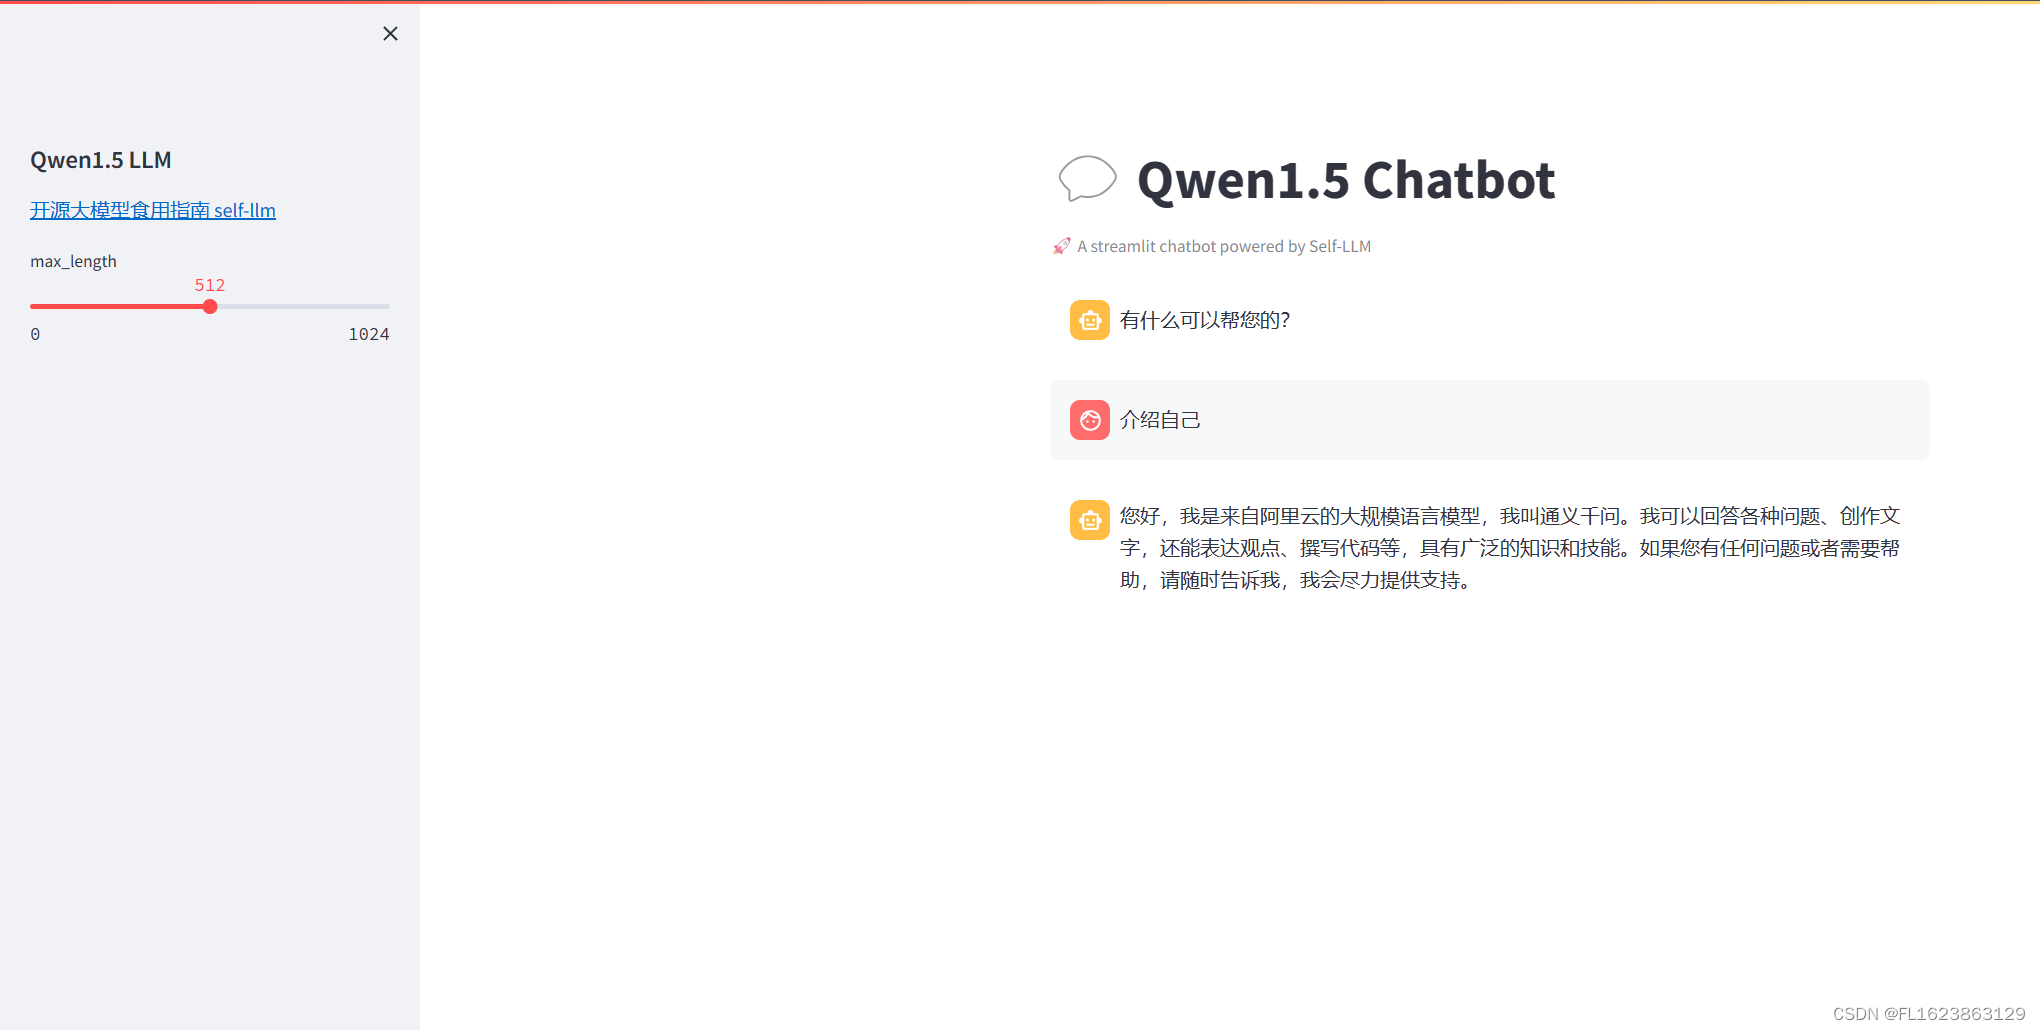 [大模型]Qwen1.5-7B-Chat-GPTQ-Int4 部署环境